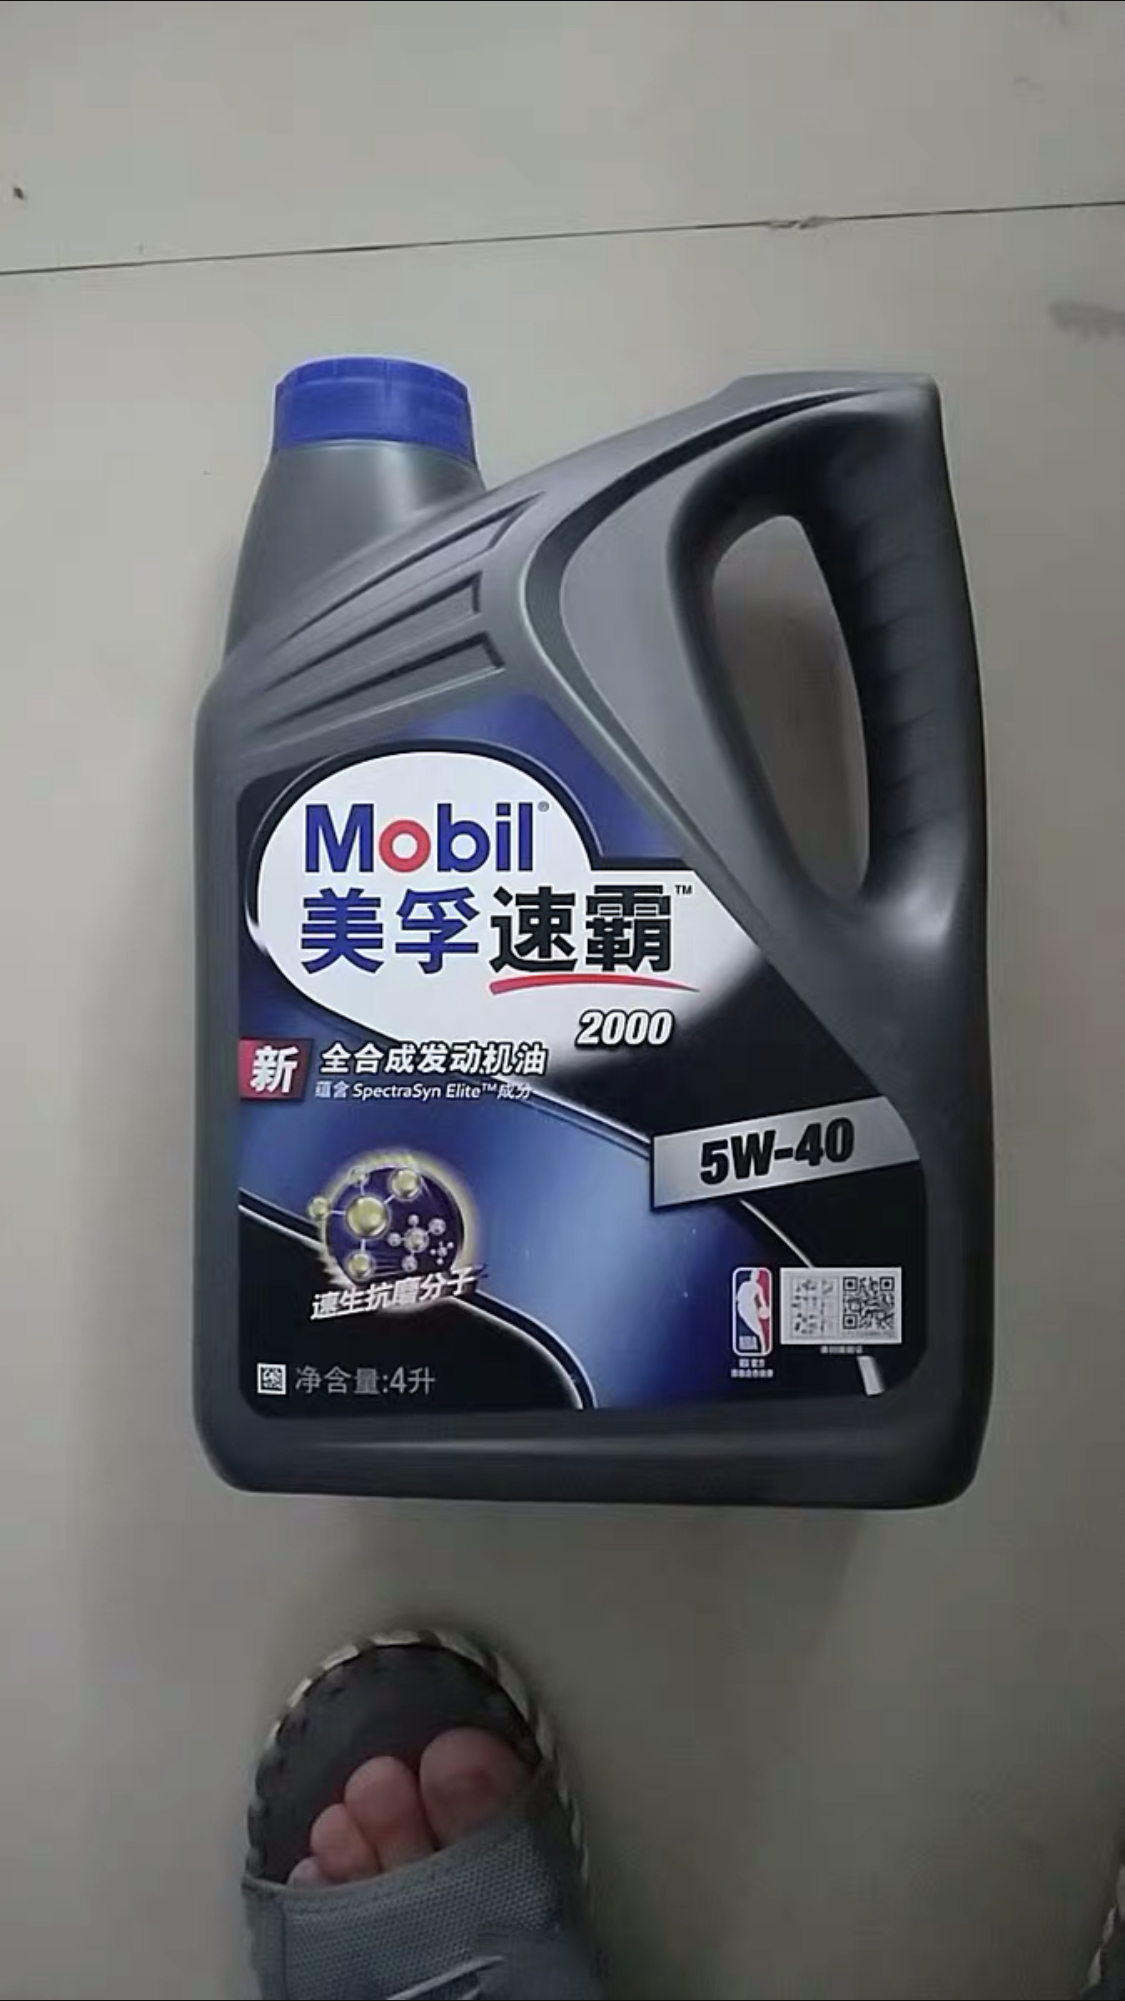 mobil美孚新版速霸2000 5w-40 合成汽车机油 润滑油 sn级 4l正品晒单